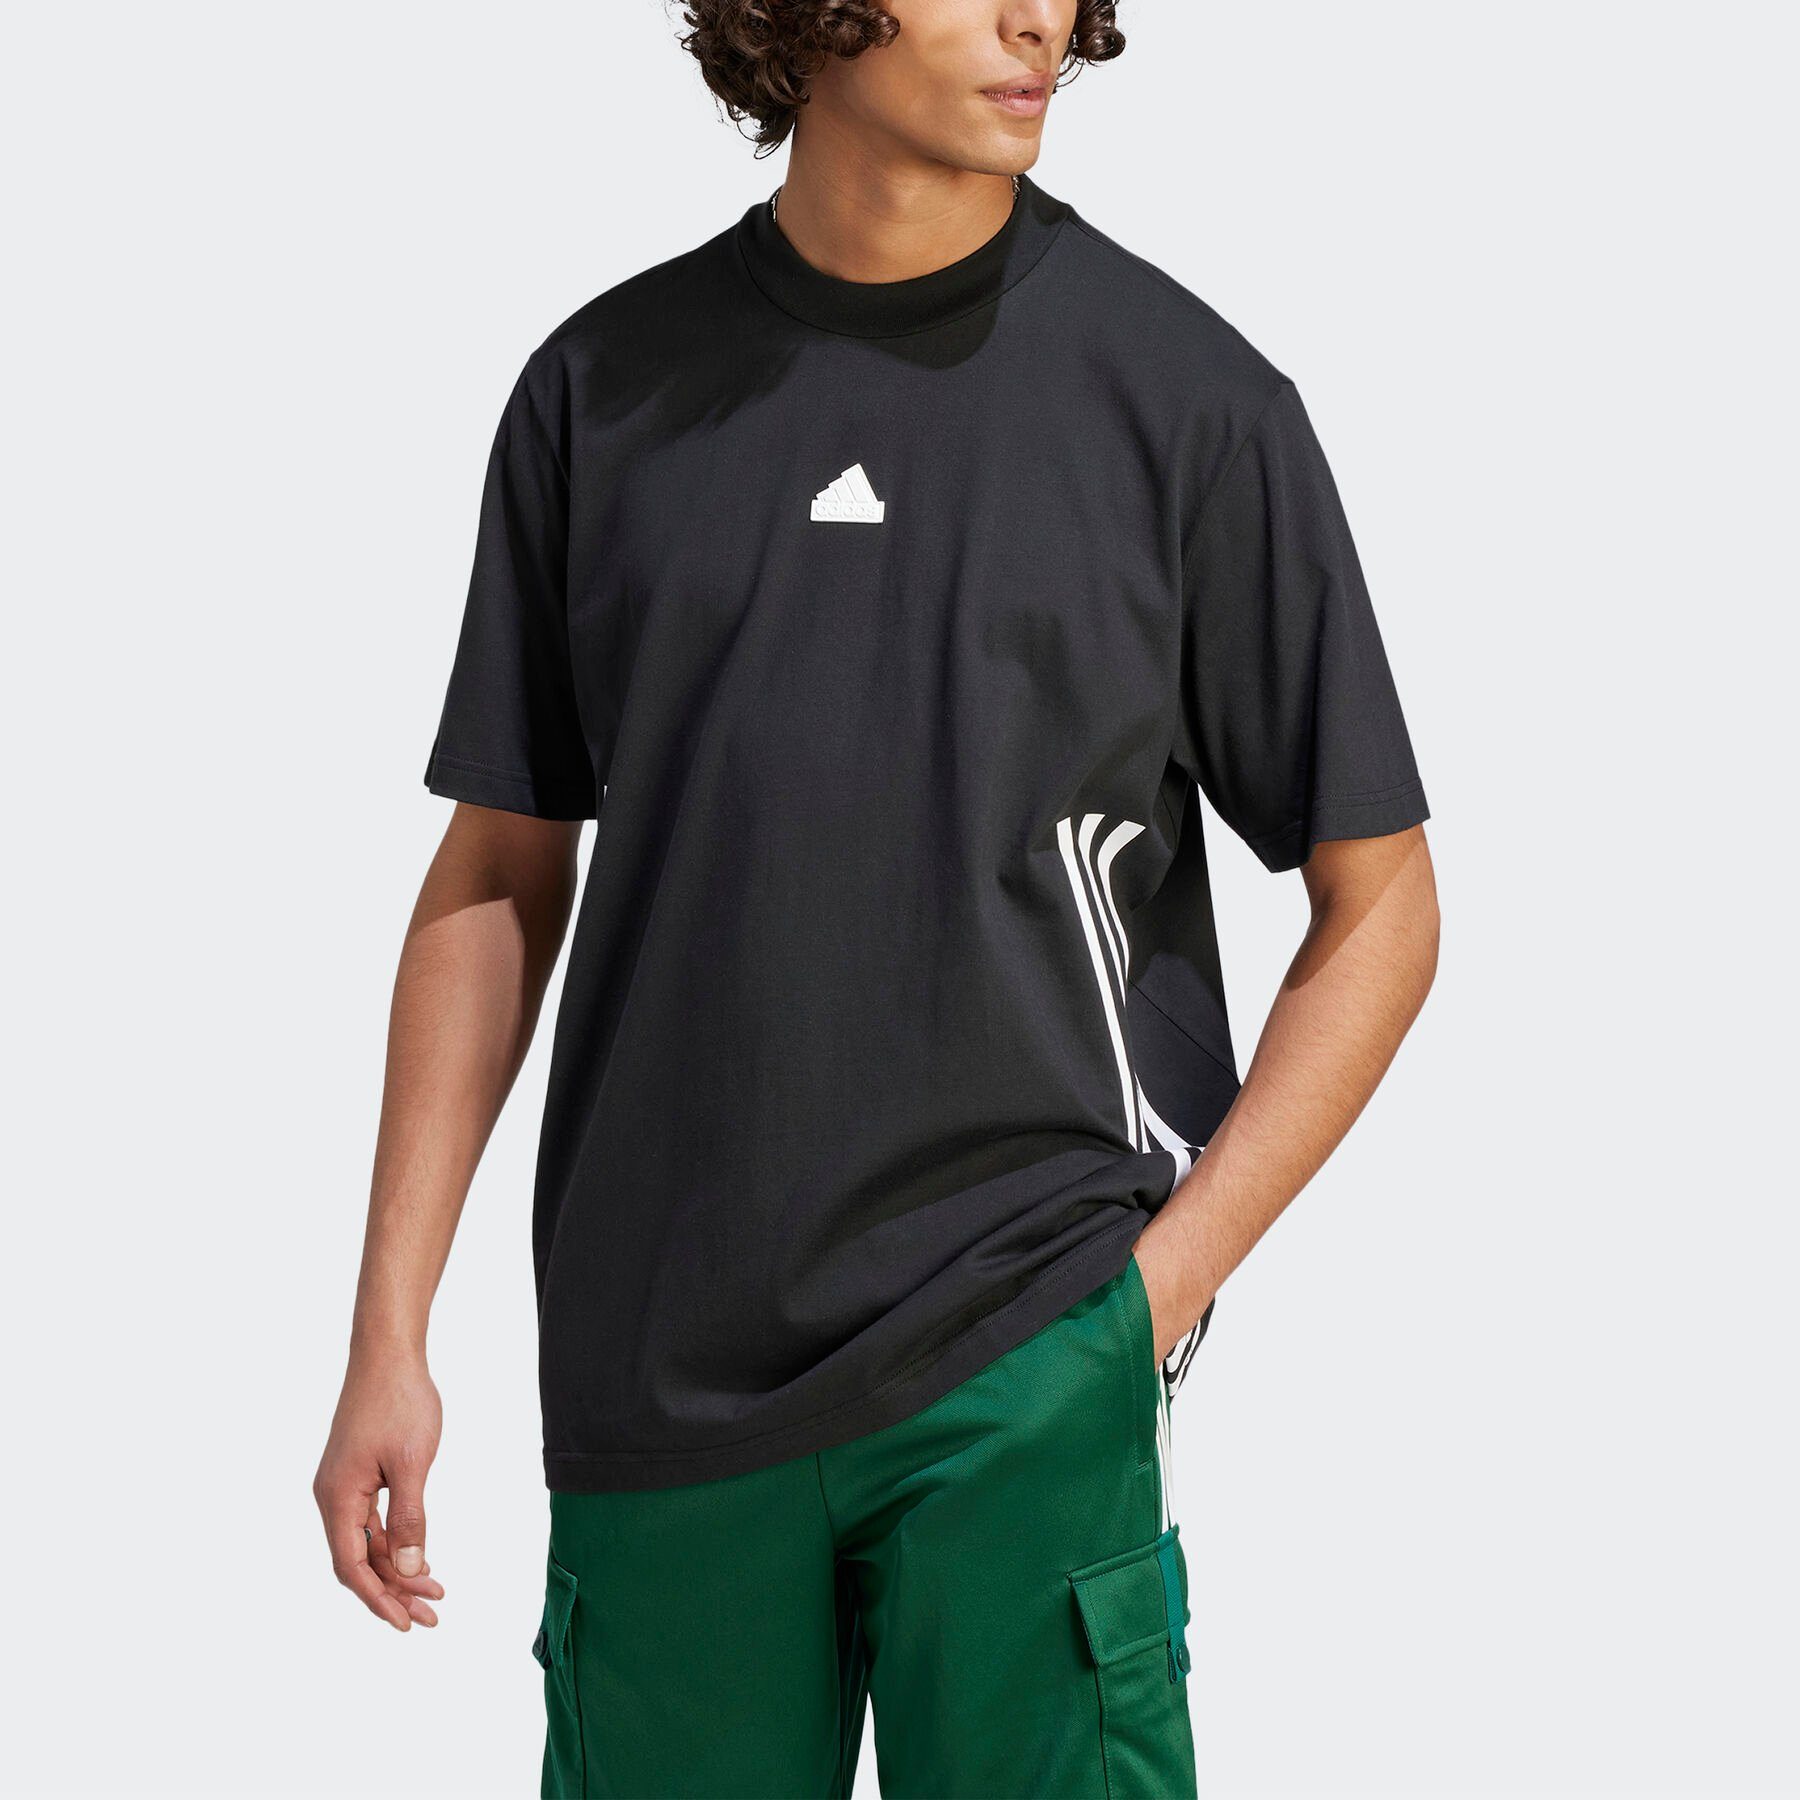 / ICONS FUTURE White adidas Black Sportswear T-Shirt 3-STREIFEN